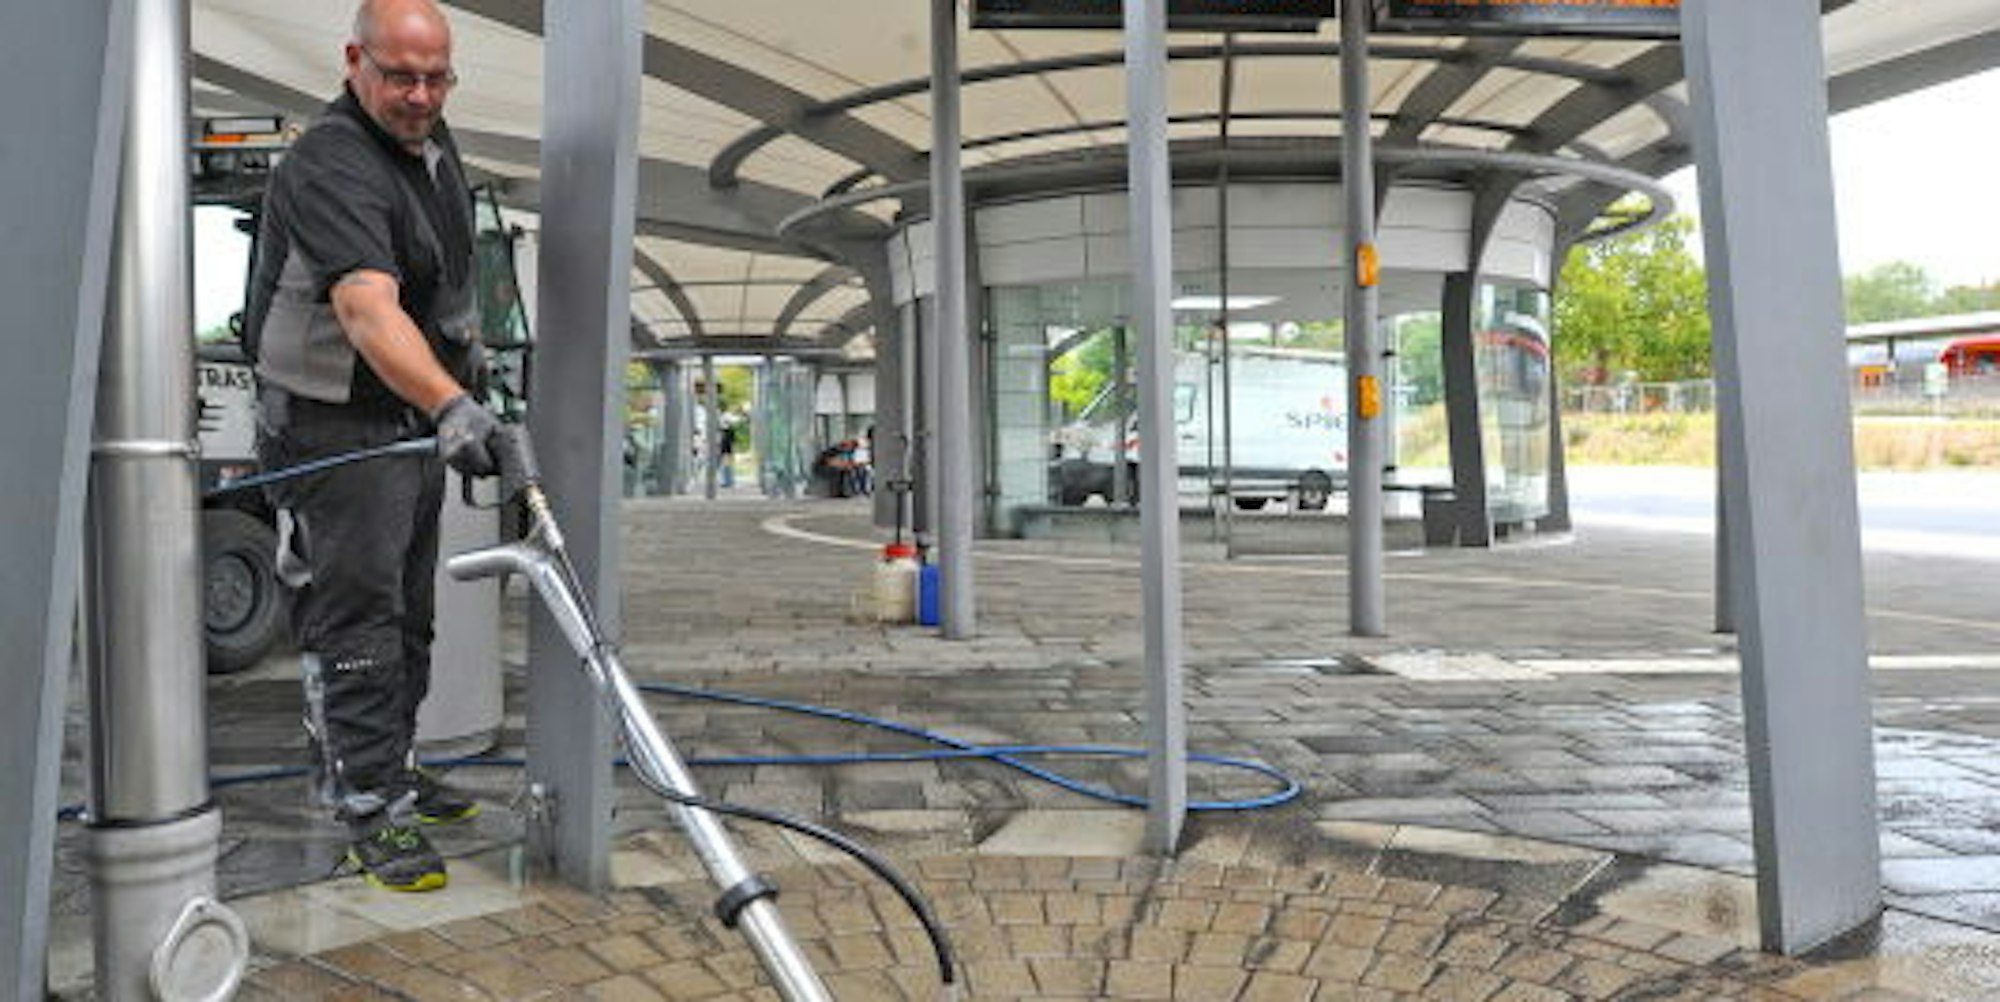 Mitarbeiter einer Fremdfirma reinigt die verdreckten Platten am Busbahnhof.